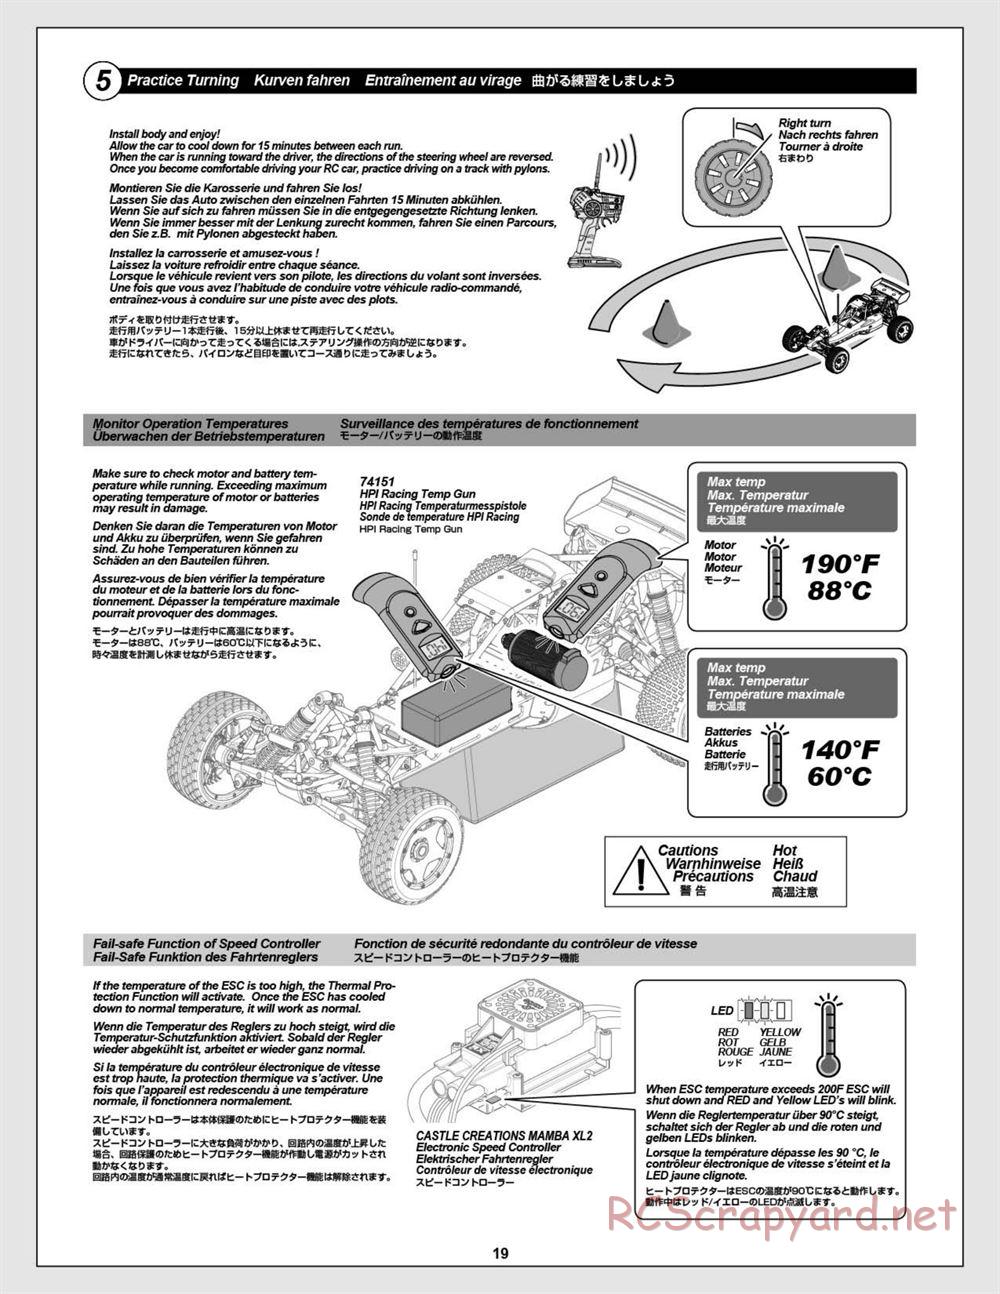 HPI - Baja 5B Flux Buggy - Manual - Page 19